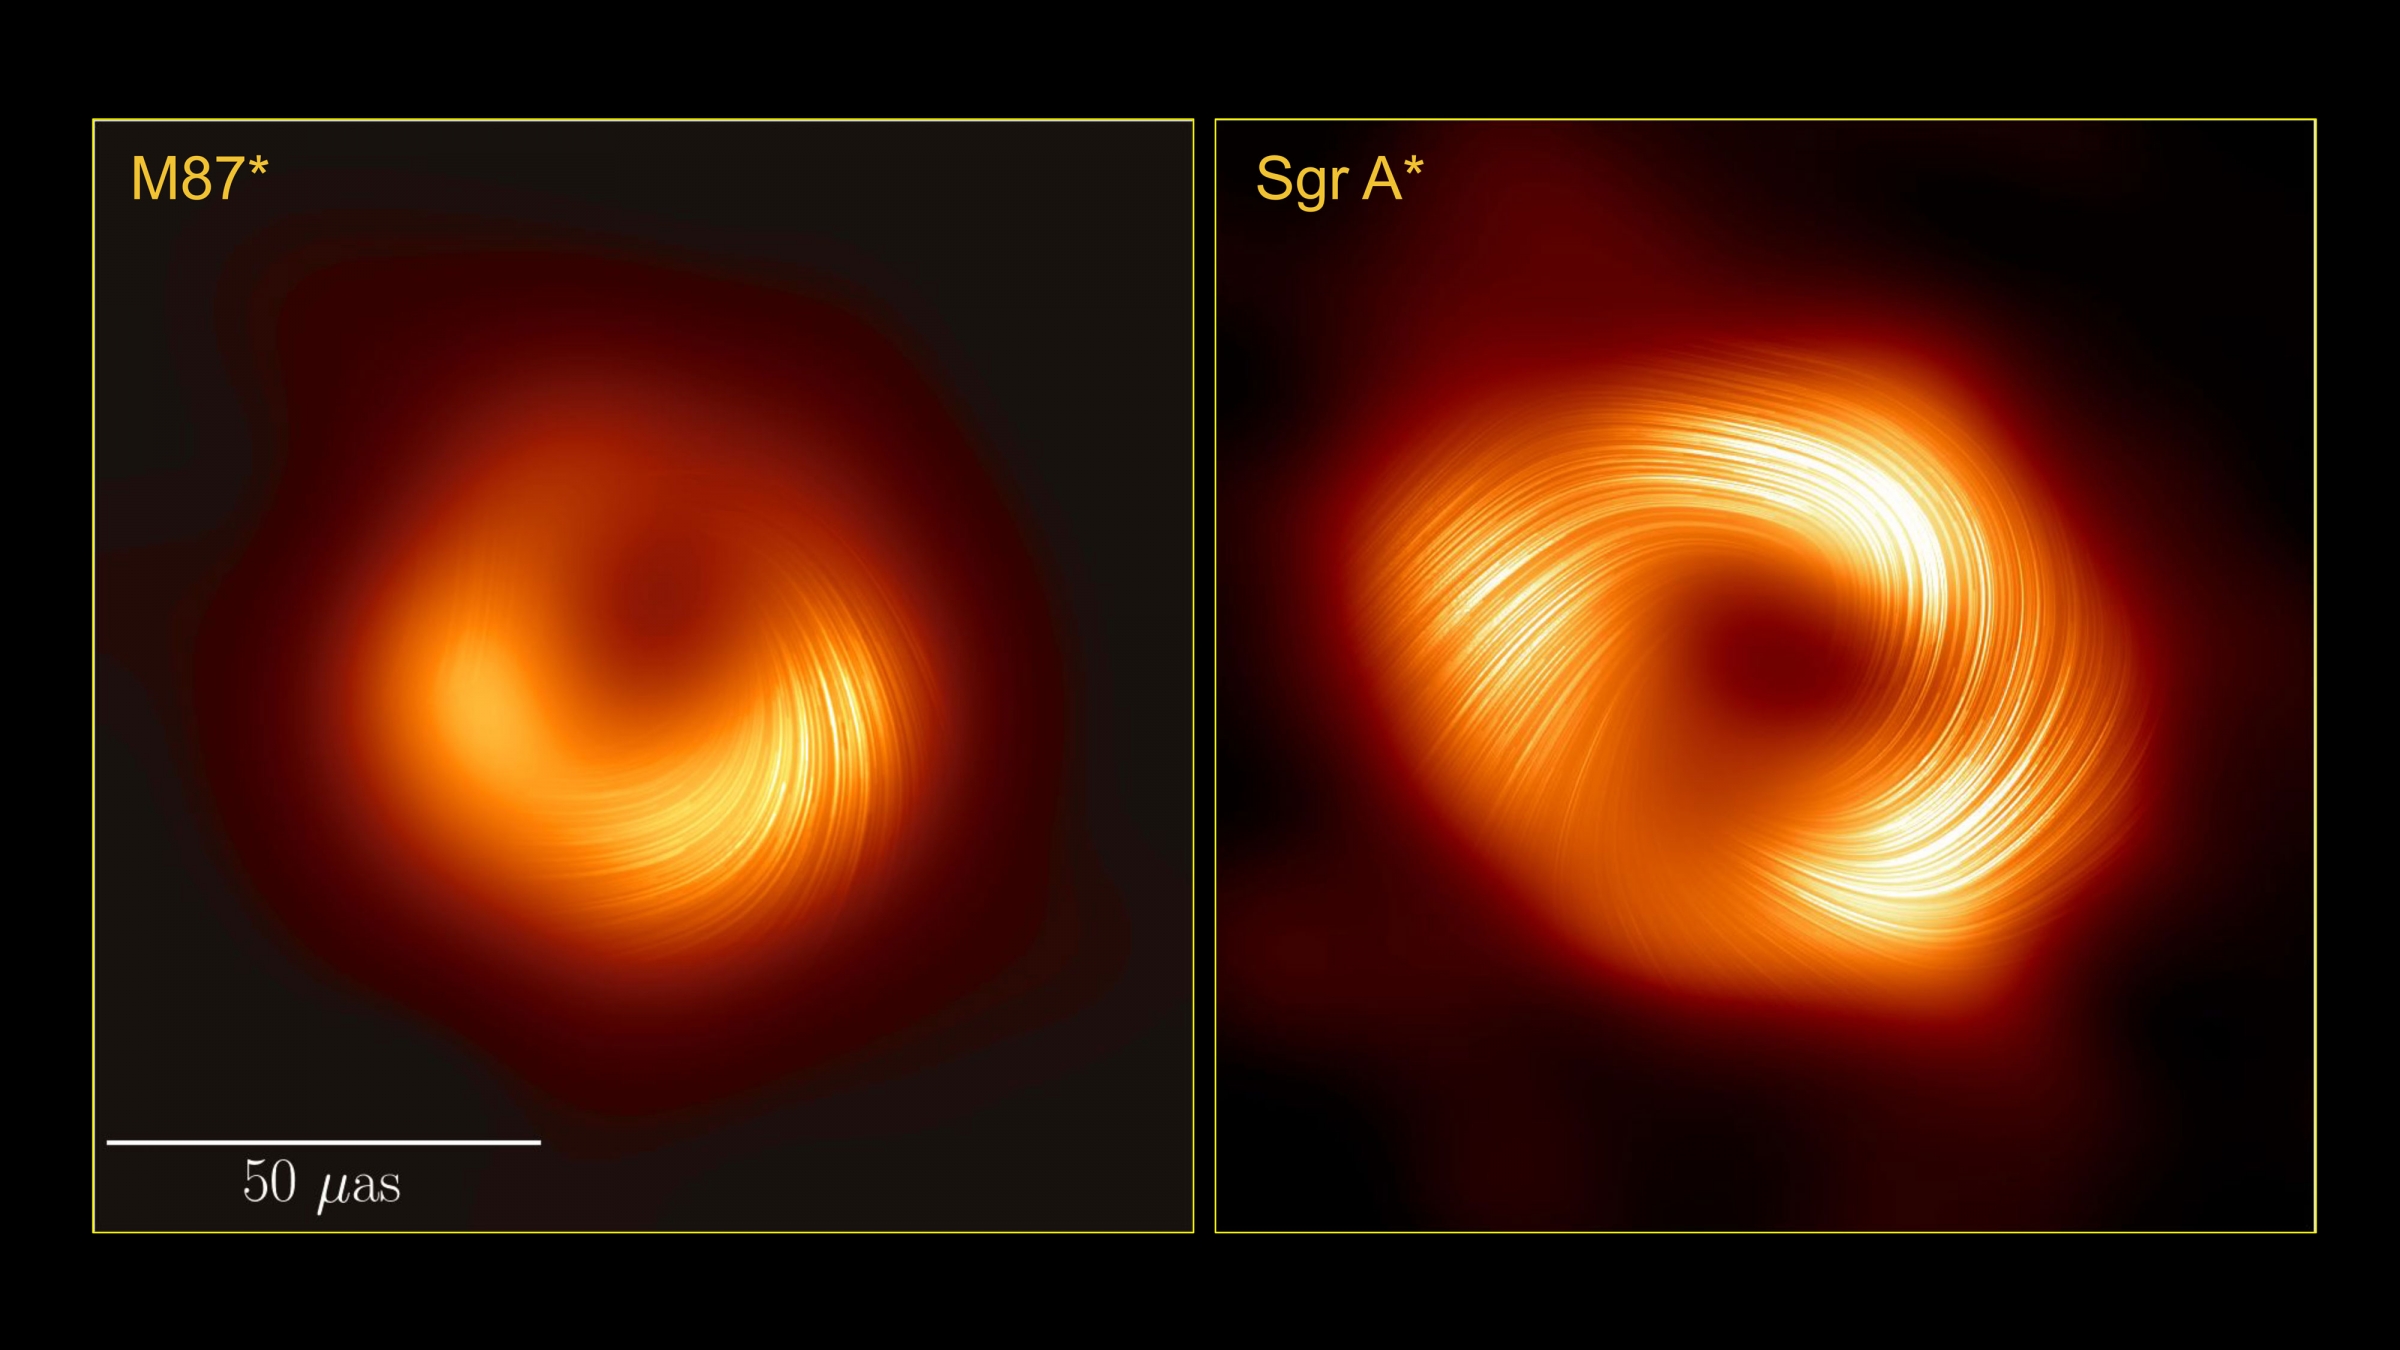 image showing similar black holes